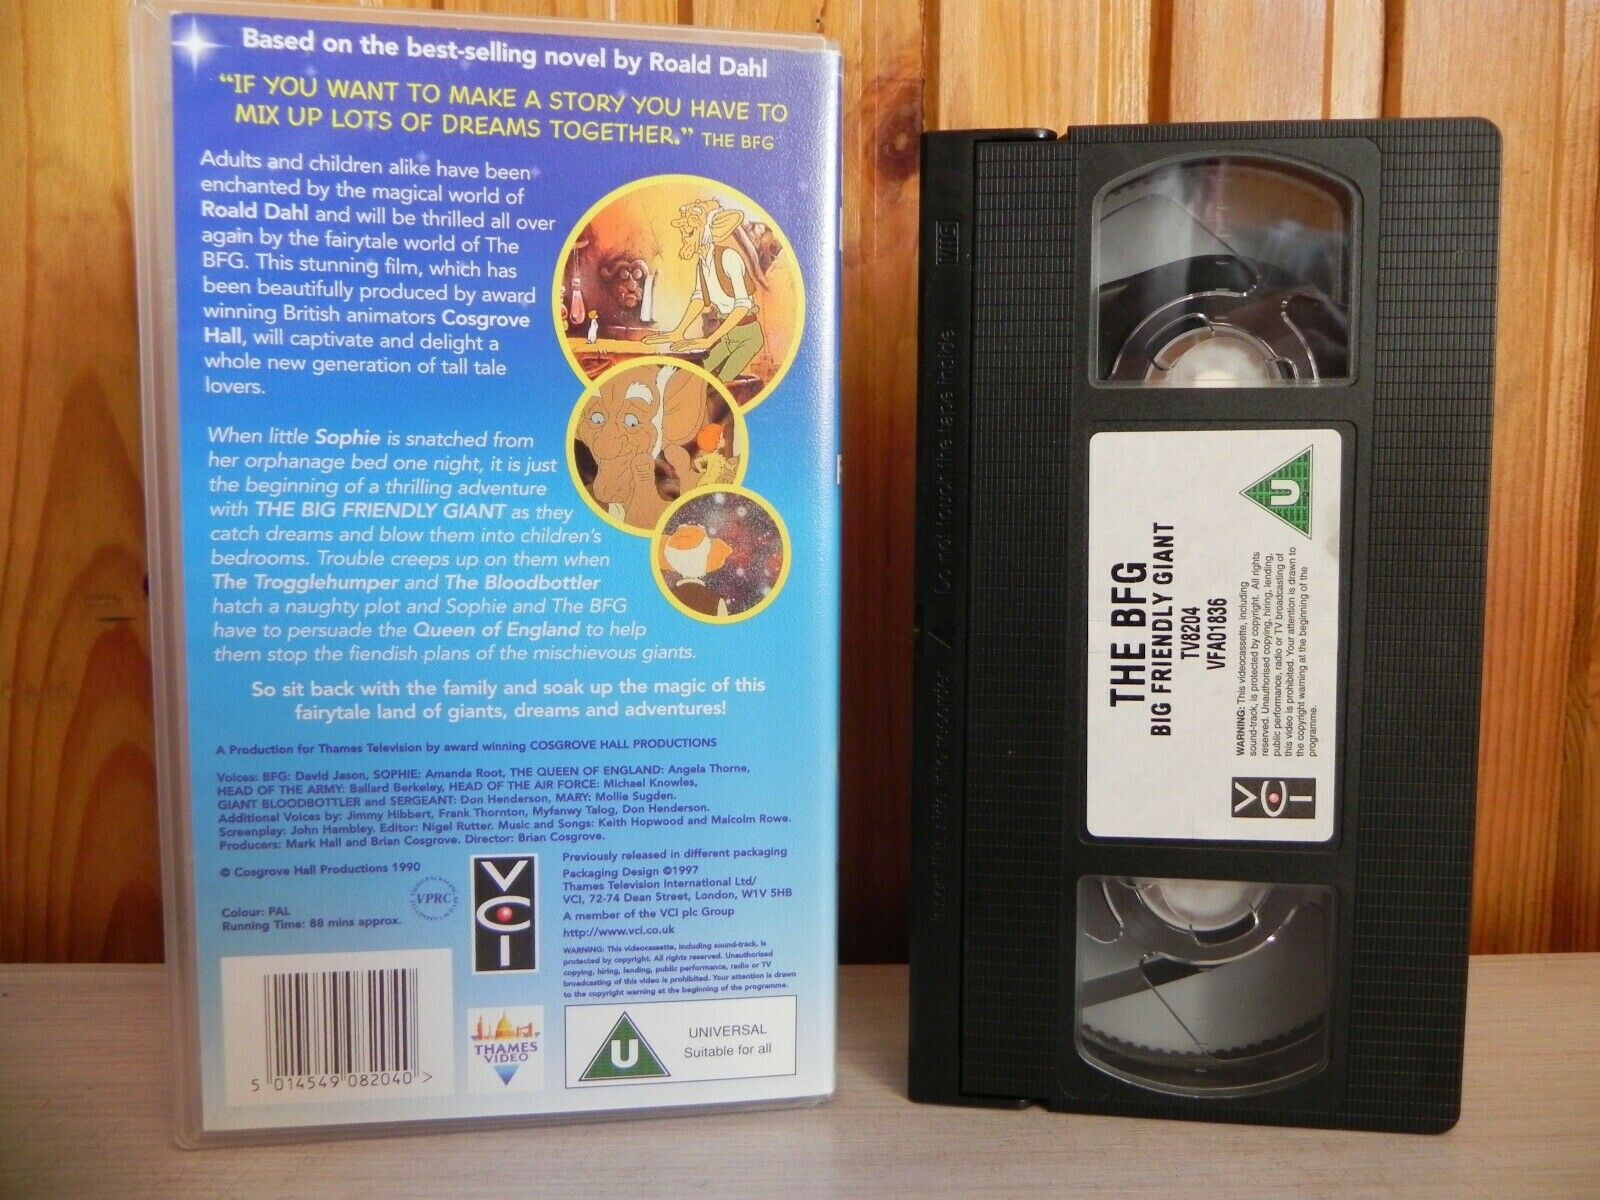 Roald Dahl's - The BFG - Big Friendly Giant - Full Length Animated Film - VHS-